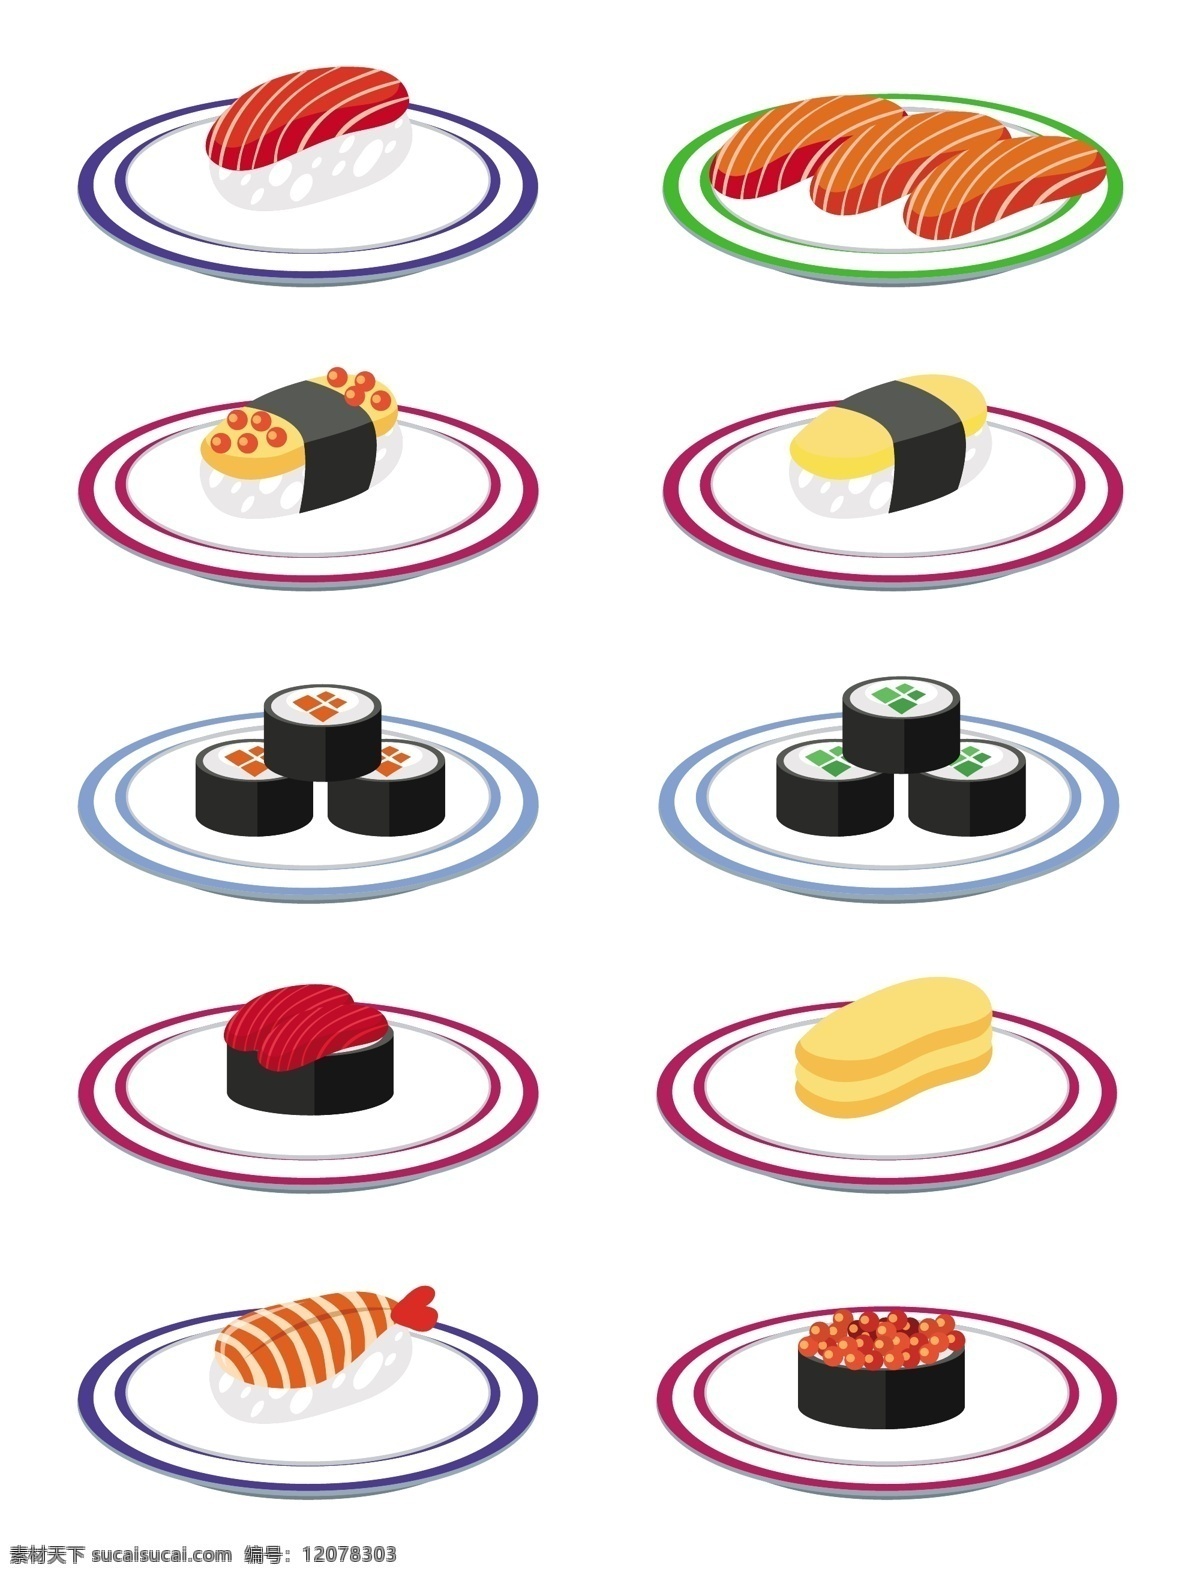 日本寿司矢量 日本寿司 寿司 日本文化 美食 餐饮 快餐 早餐 日本元素 寿司素材 手绘寿司 食品蔬菜水果 生活百科 餐饮美食